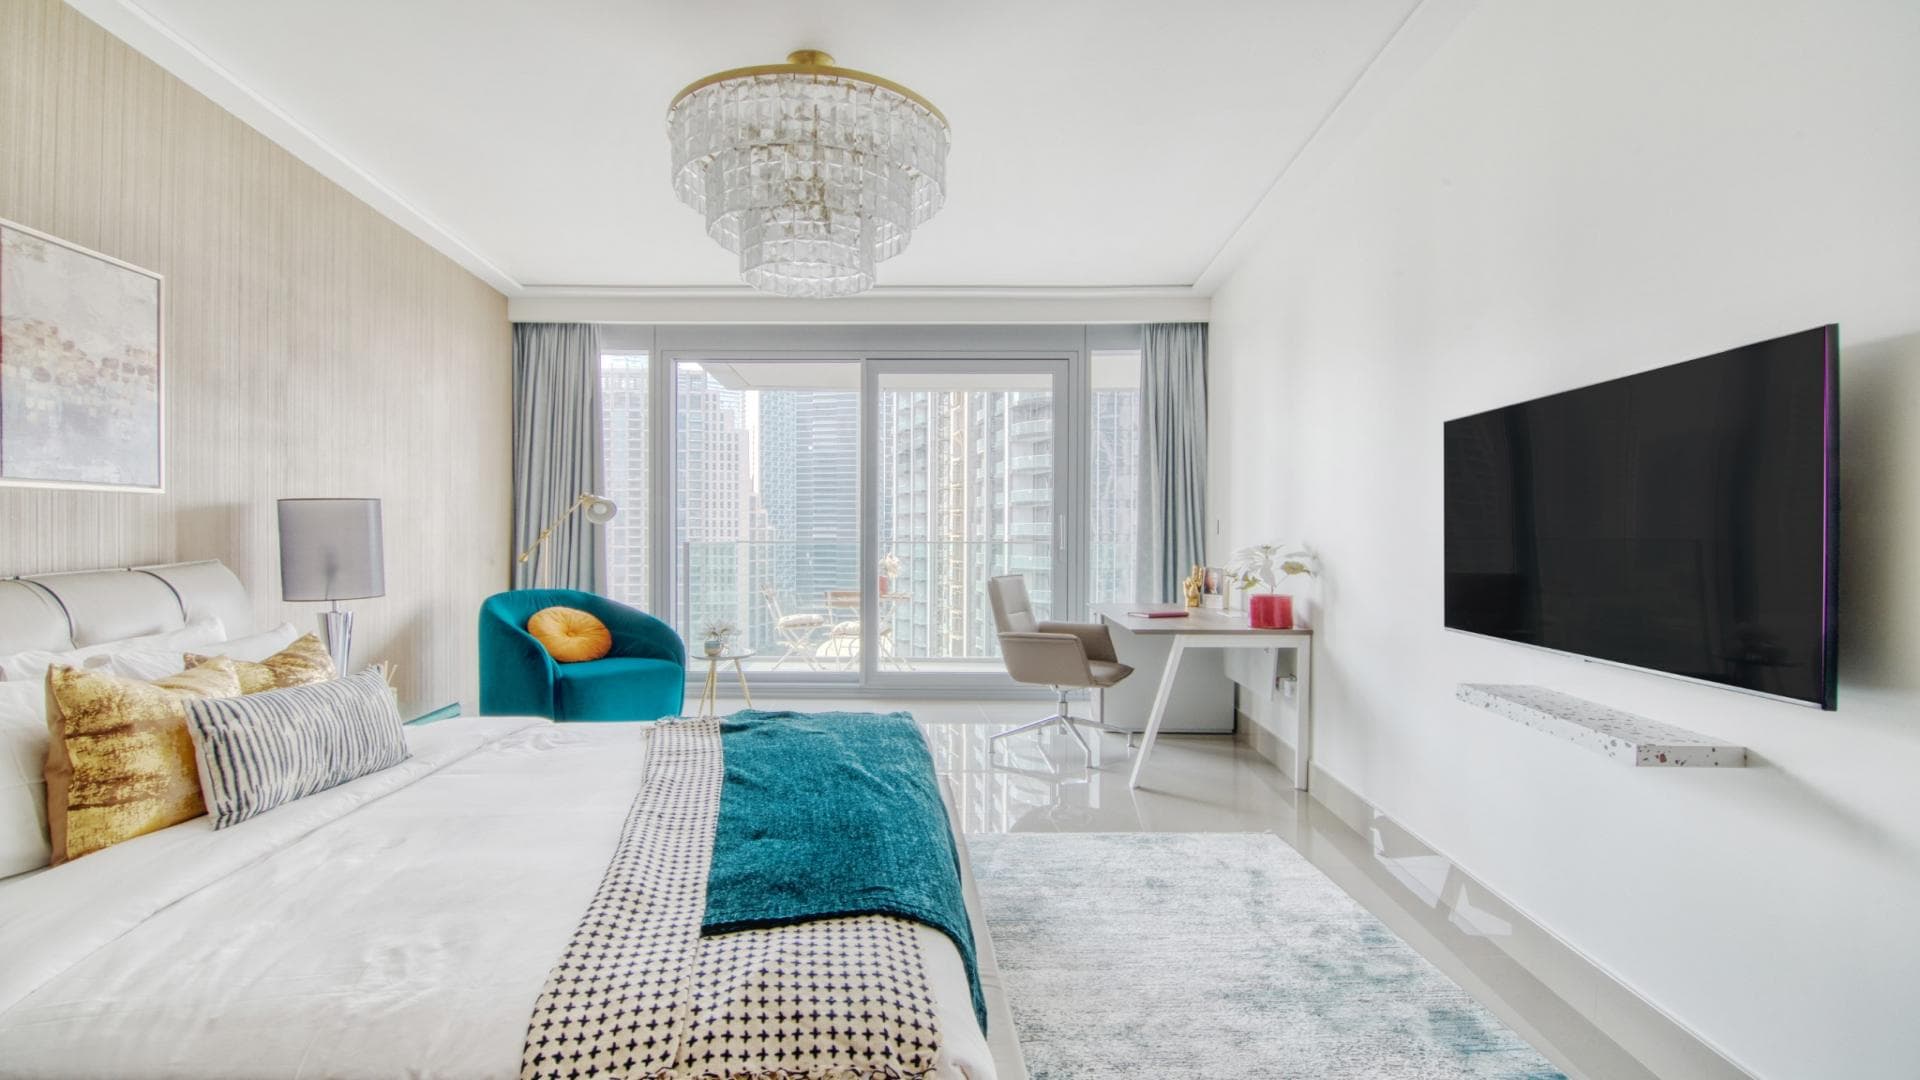 2 Bedroom Apartment For Rent Burj Khalifa Area Lp21582 117ca908790e0000.jpg